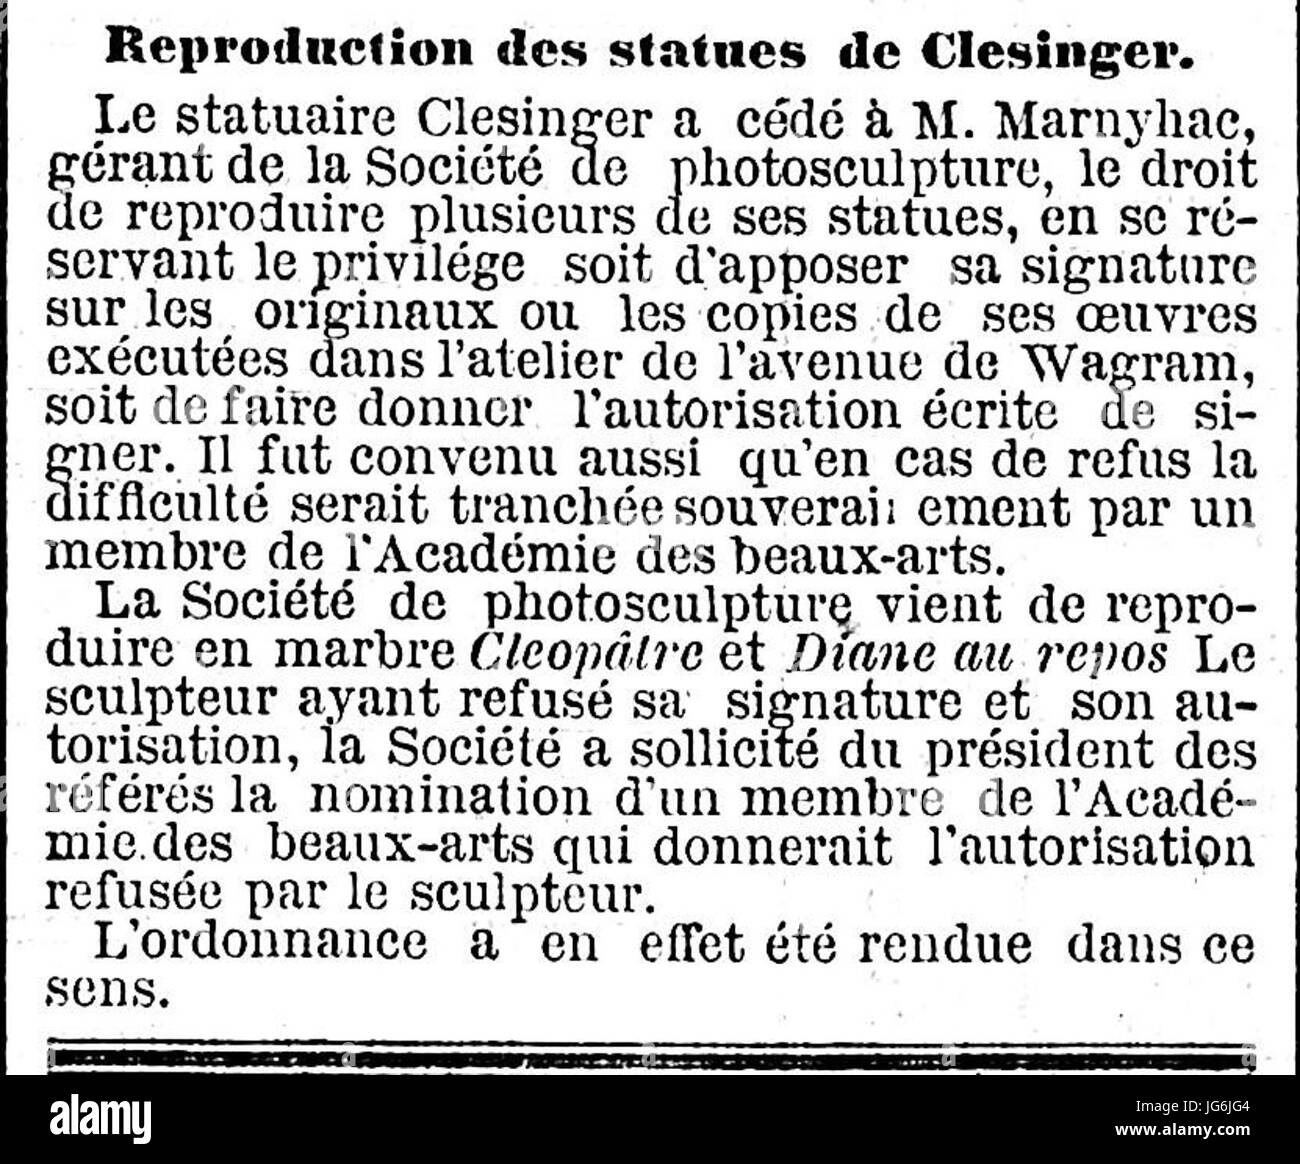 Reproduction des statues de Clesinger - Rubrique Tribunaux - Le Temps - 13 octobre 1872 - page 3 - 3ème colonne Stock Photo